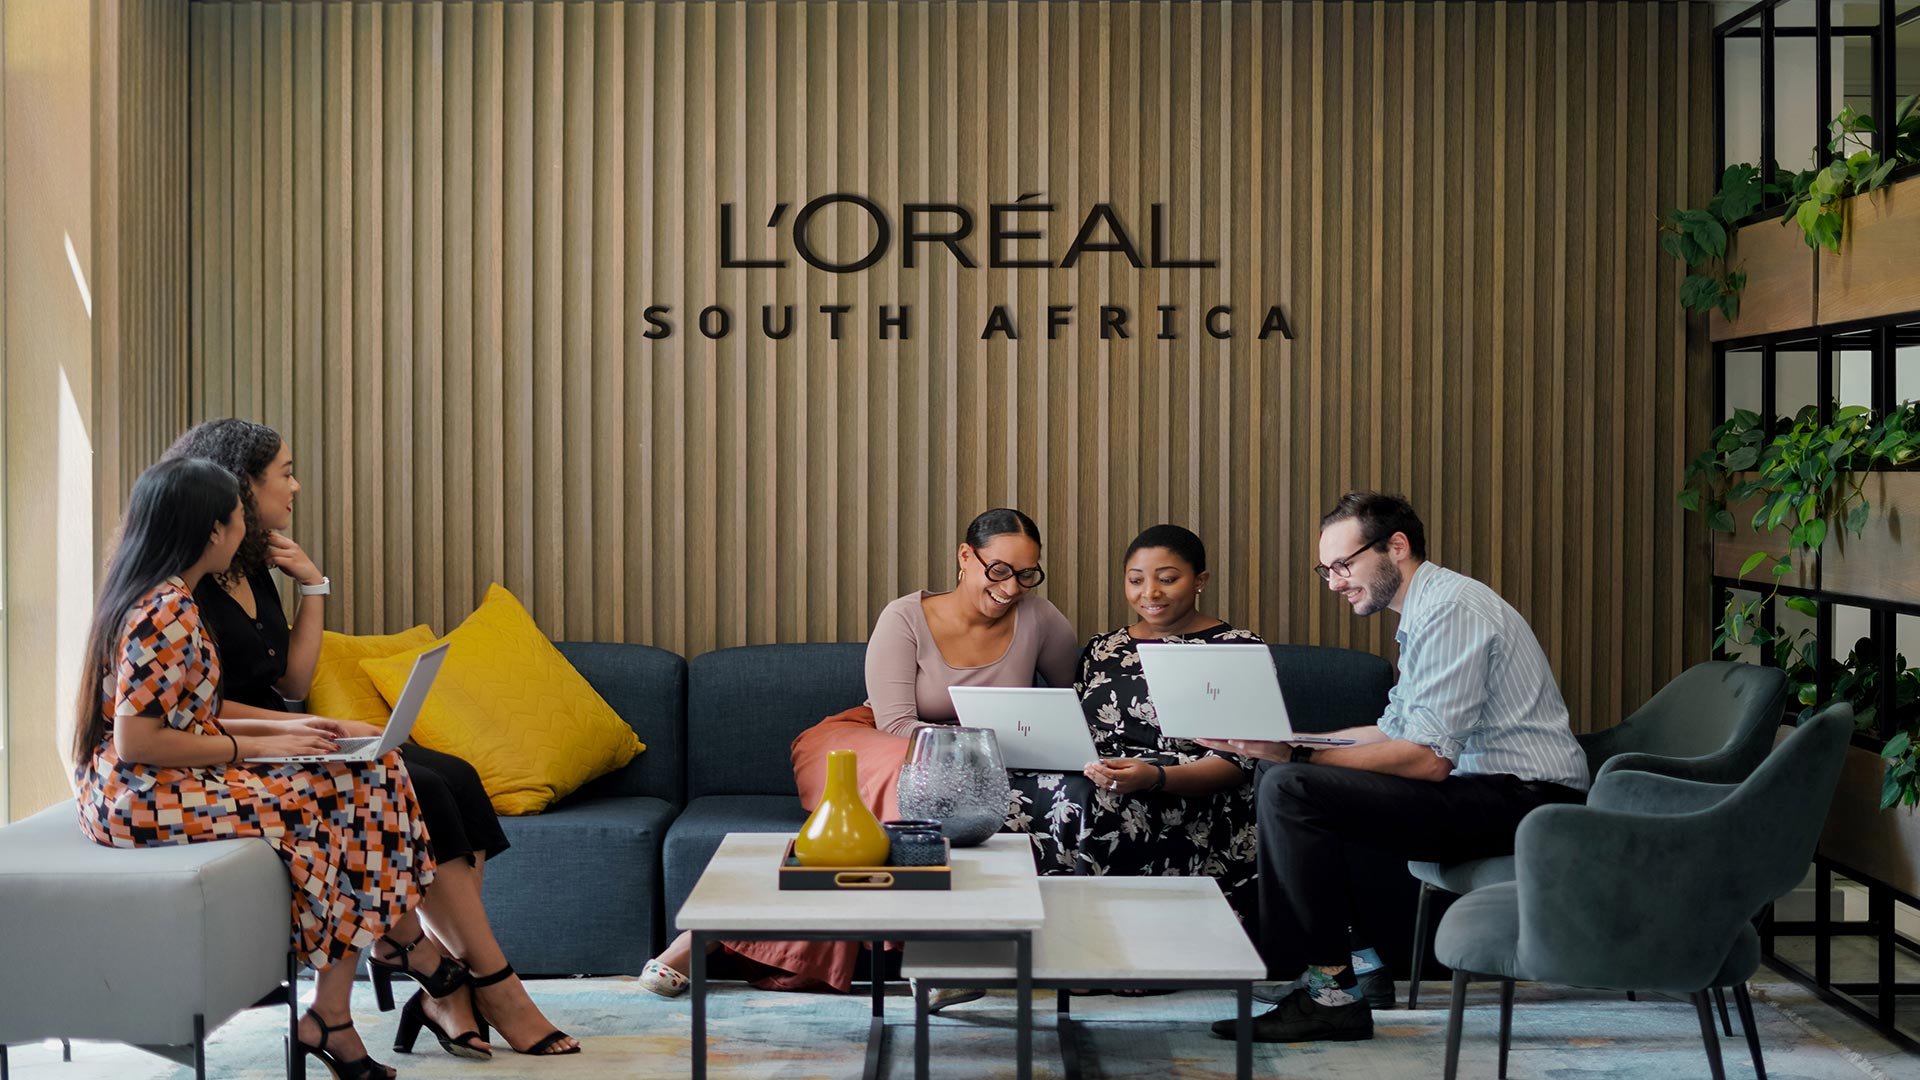 L'Oréal South Africa